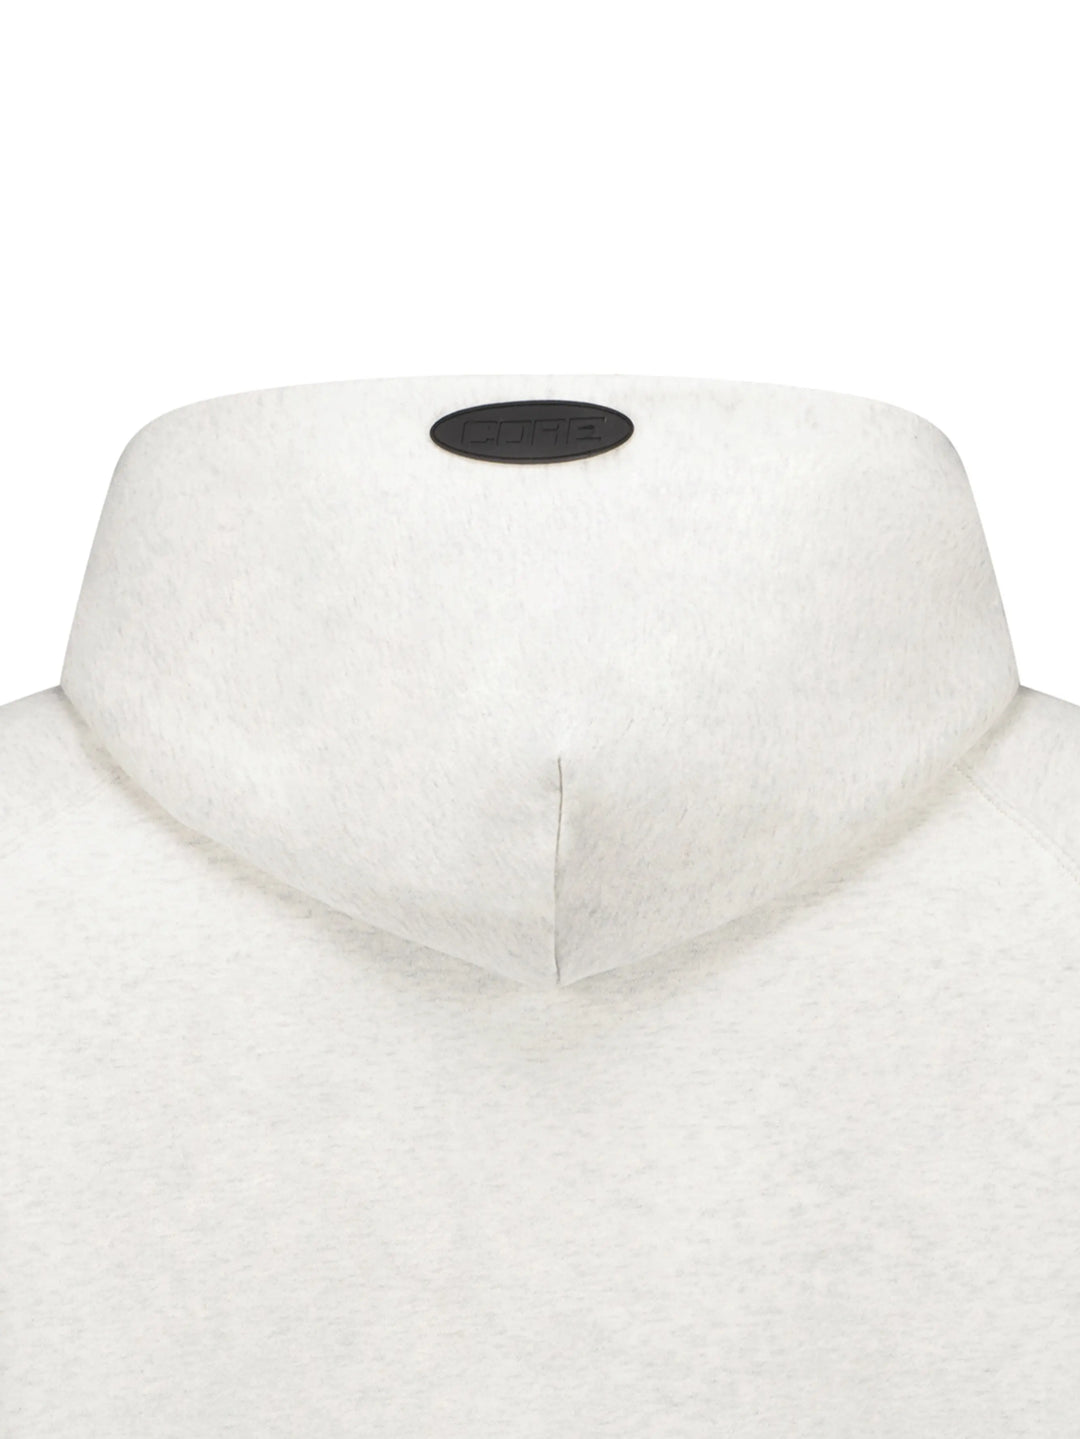 CORE Essential Raglan Sleeve Hoodie Ecru Grey in Melbourne, Australia - Prior